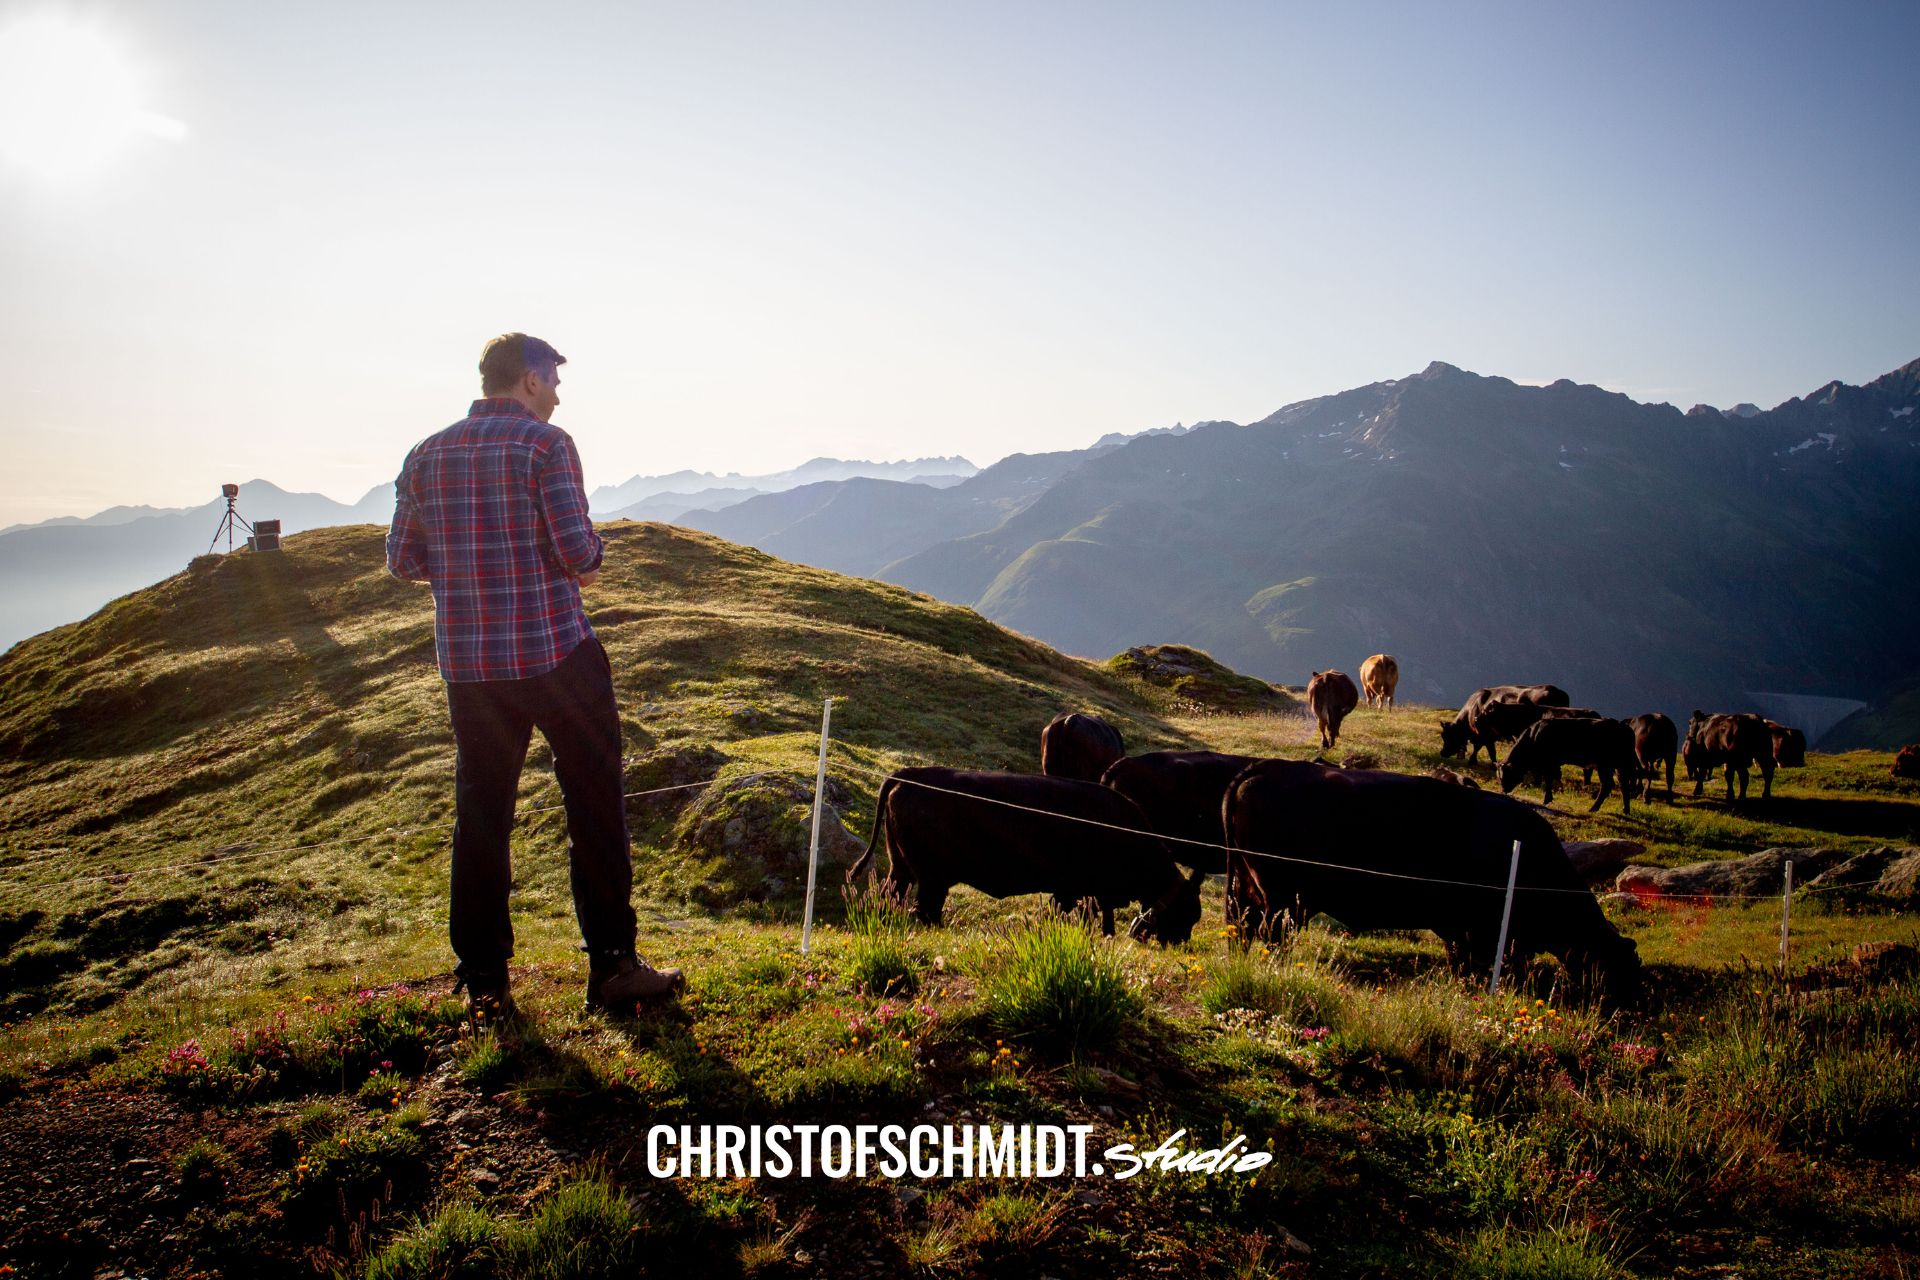 Christof Schmidt | Making of "Lightmove" | Behind the scenes